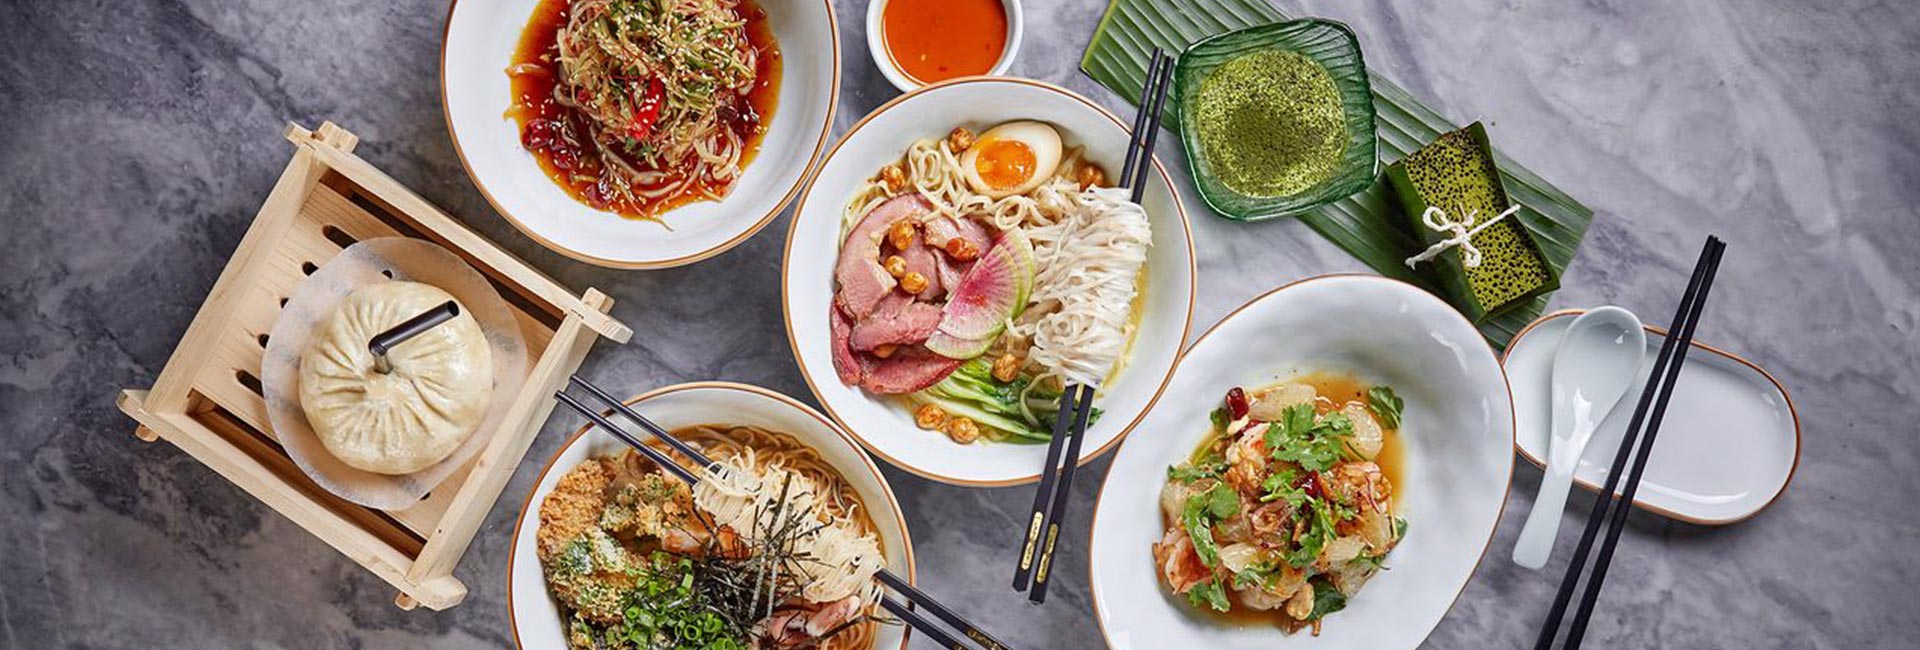 דירוג המסעדות הסיניות הטובות ביותר במוסקבה לשנת 2020